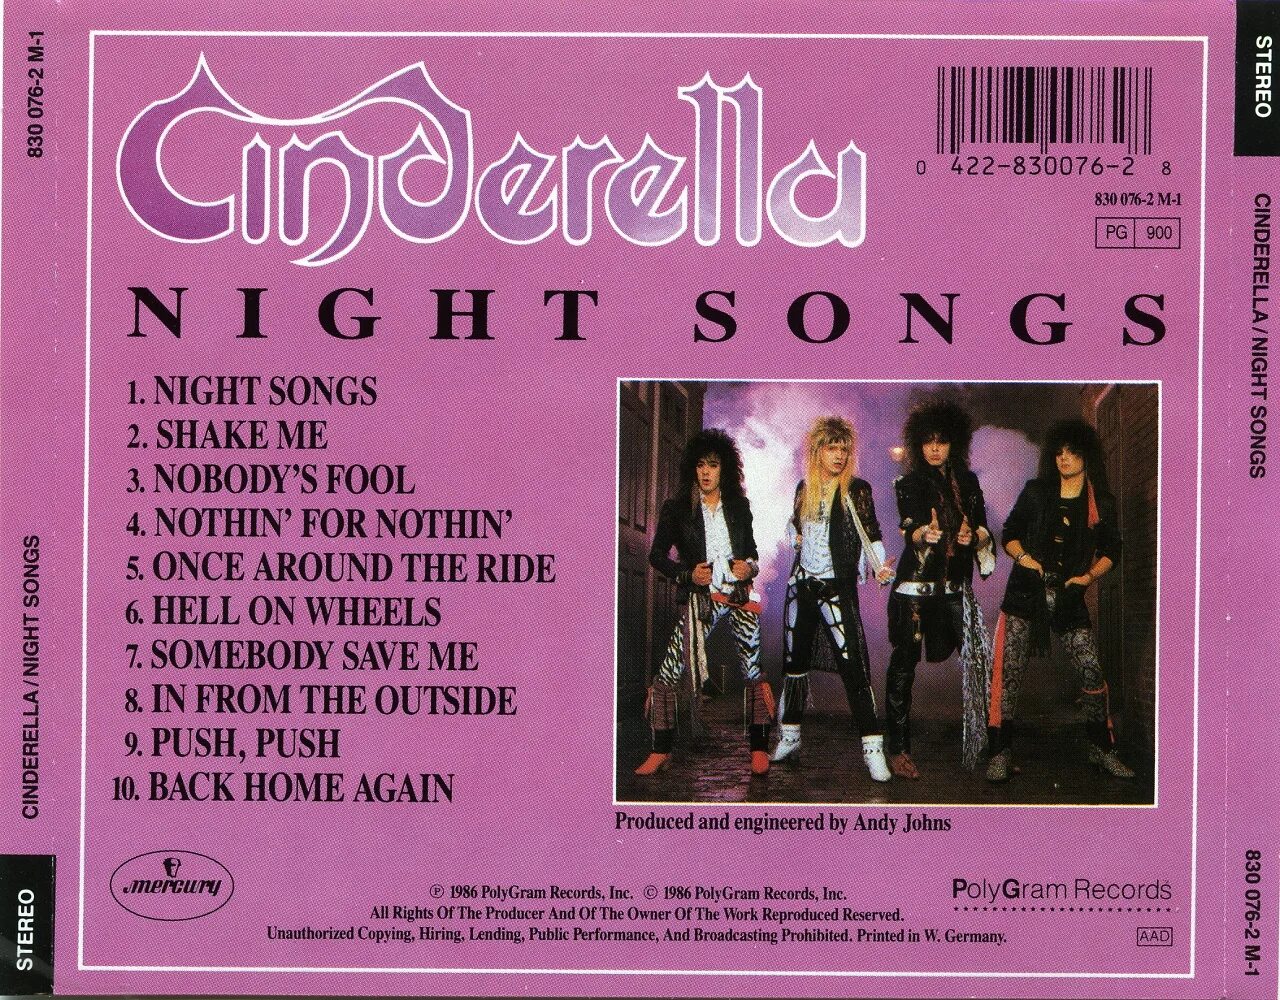 Синдерелла 1986. Cinderella группа Night Songs. Синдерелла группа обложка. Cinderella Night Songs 1986. Английская песня nights